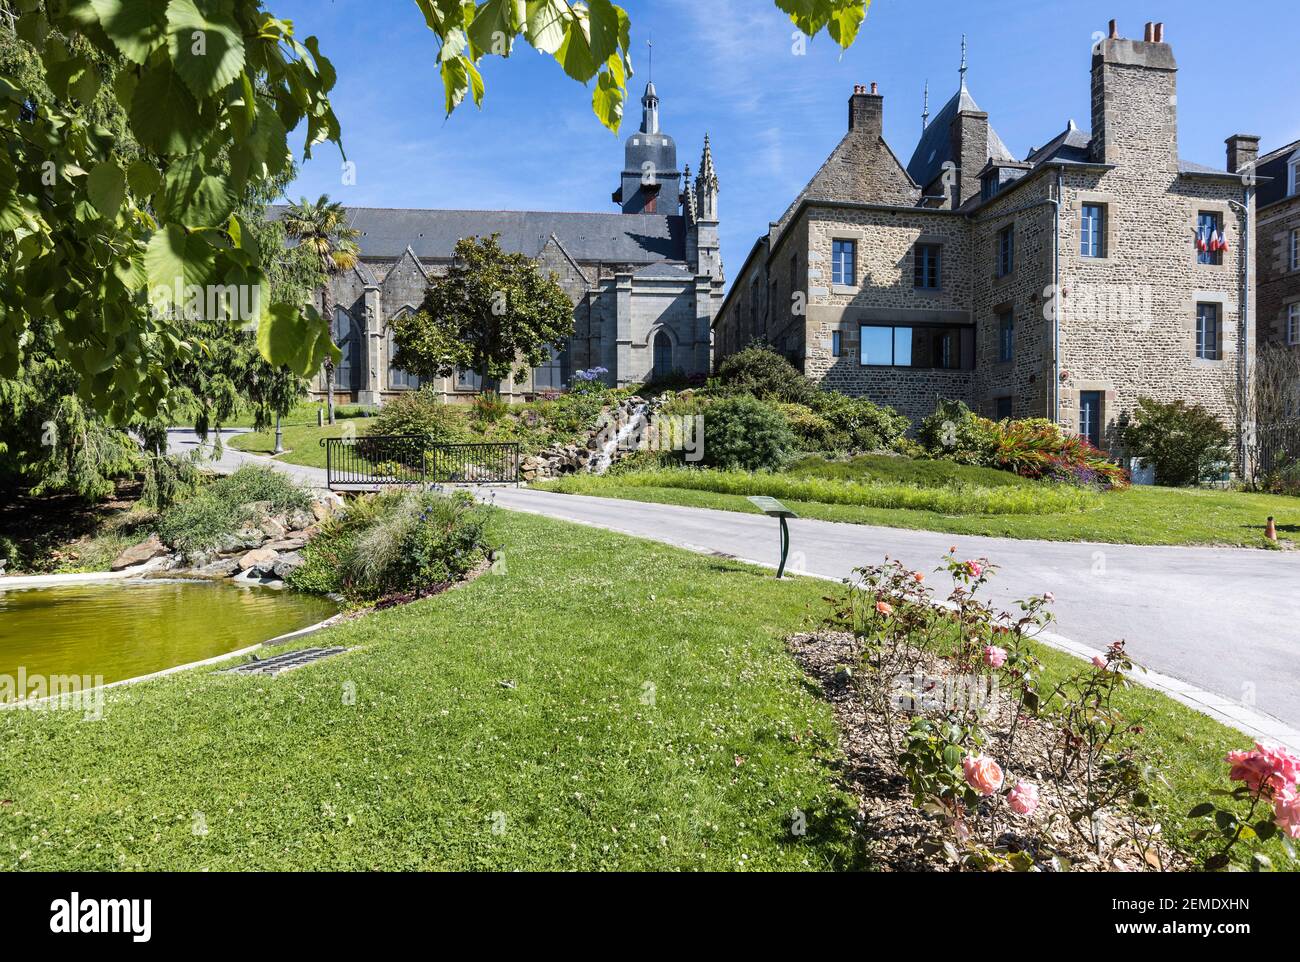 Jardin Public, Garten, in Fougeres, Frankreich bei strahlender Sommersonne, klarem blauen Himmel mit einer Kirche und anderen Gebäuden im Hintergrund, keine Menschen Stockfoto